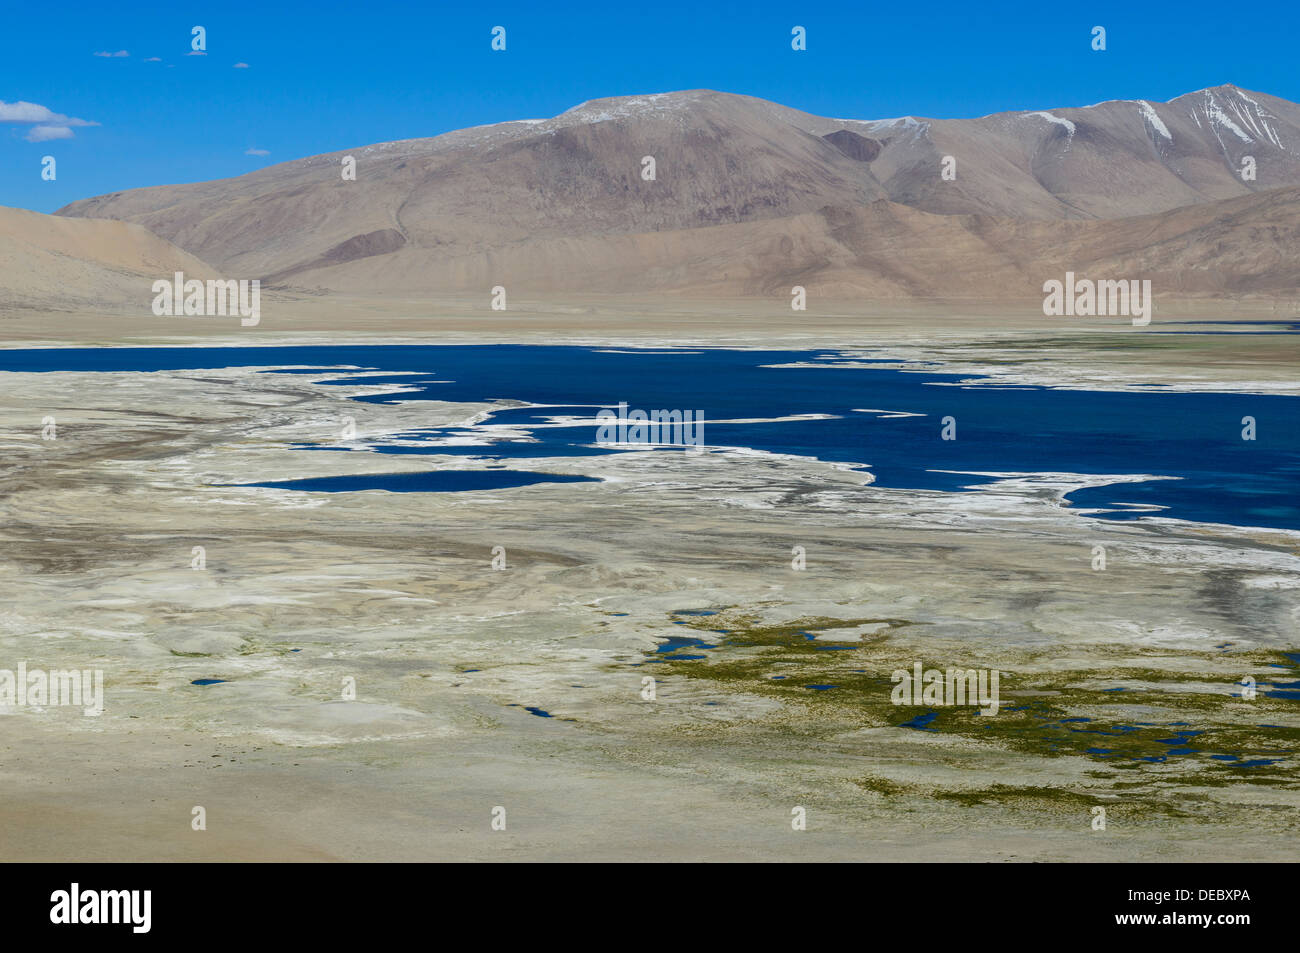 Luftaufnahme des Tso Kar, einem schwankenden Salzsee liegt auf einer Höhe von 4,530 m, Korzok, Ladakh, Jammu und Kaschmir, Indien Stockfoto